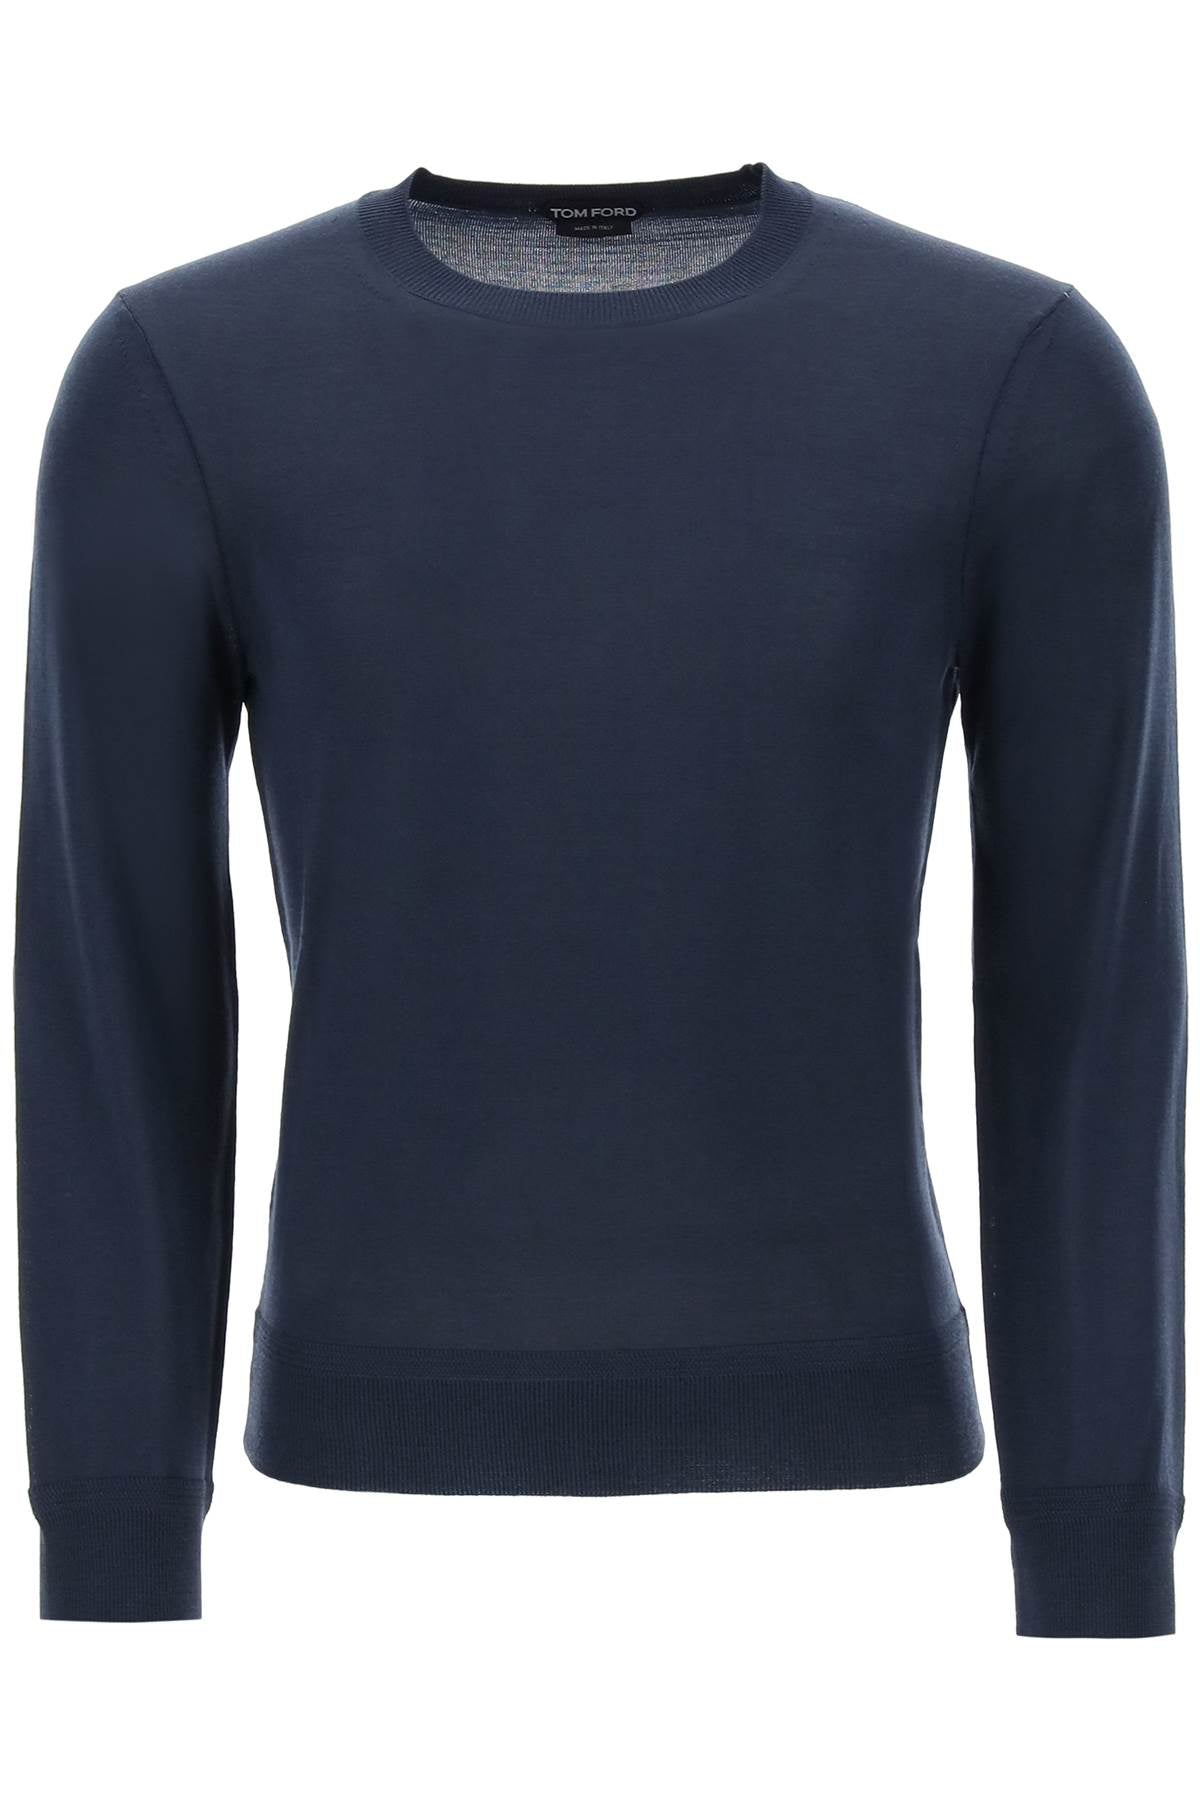 メンズ用高級な極細ウールセーター - 軽量なクルーネックのブルー